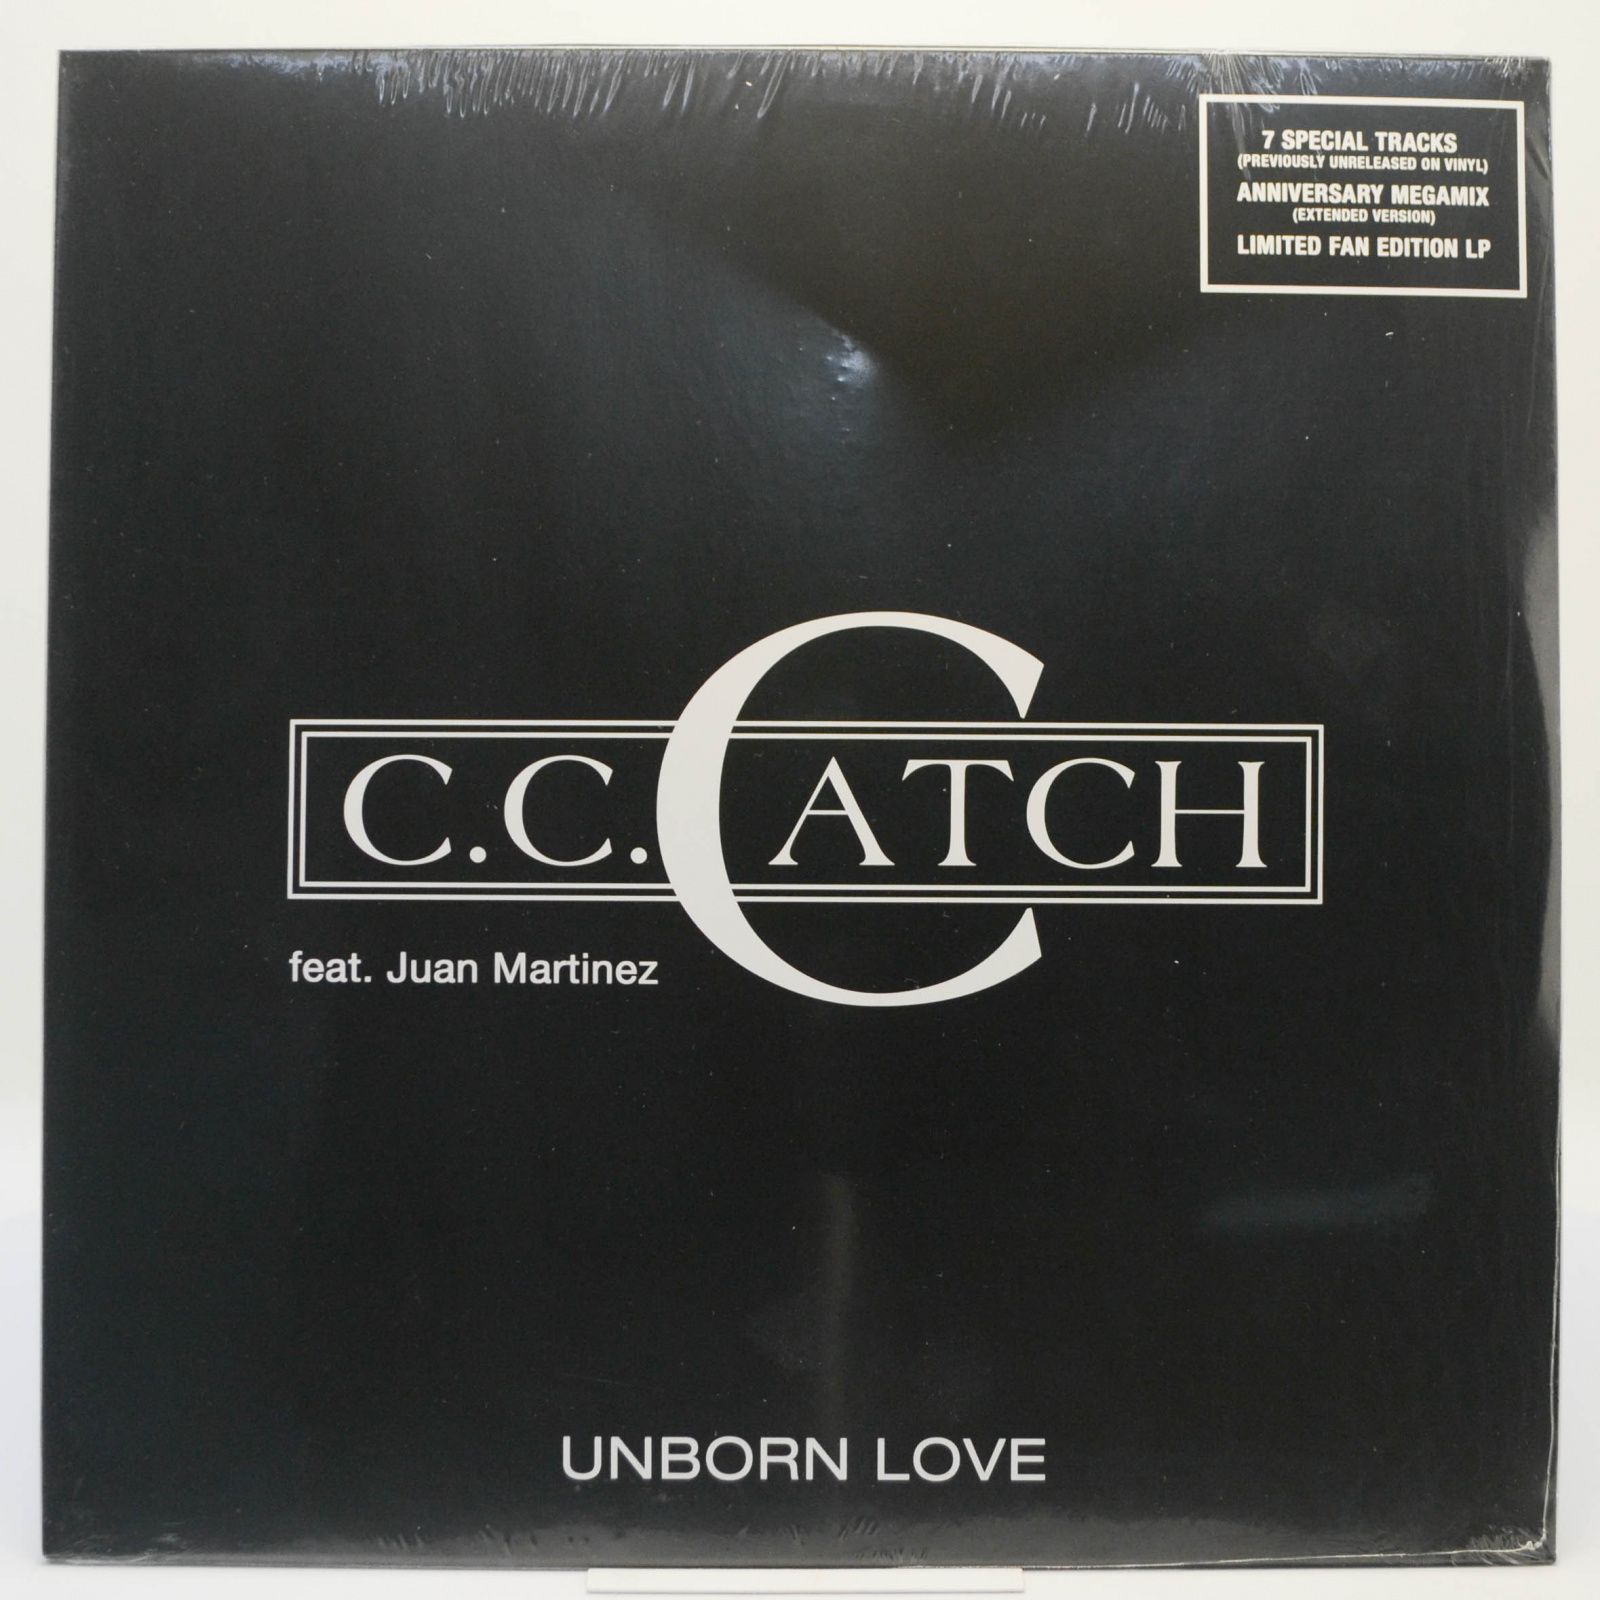 C.C. Catch feat. Juan Martinez